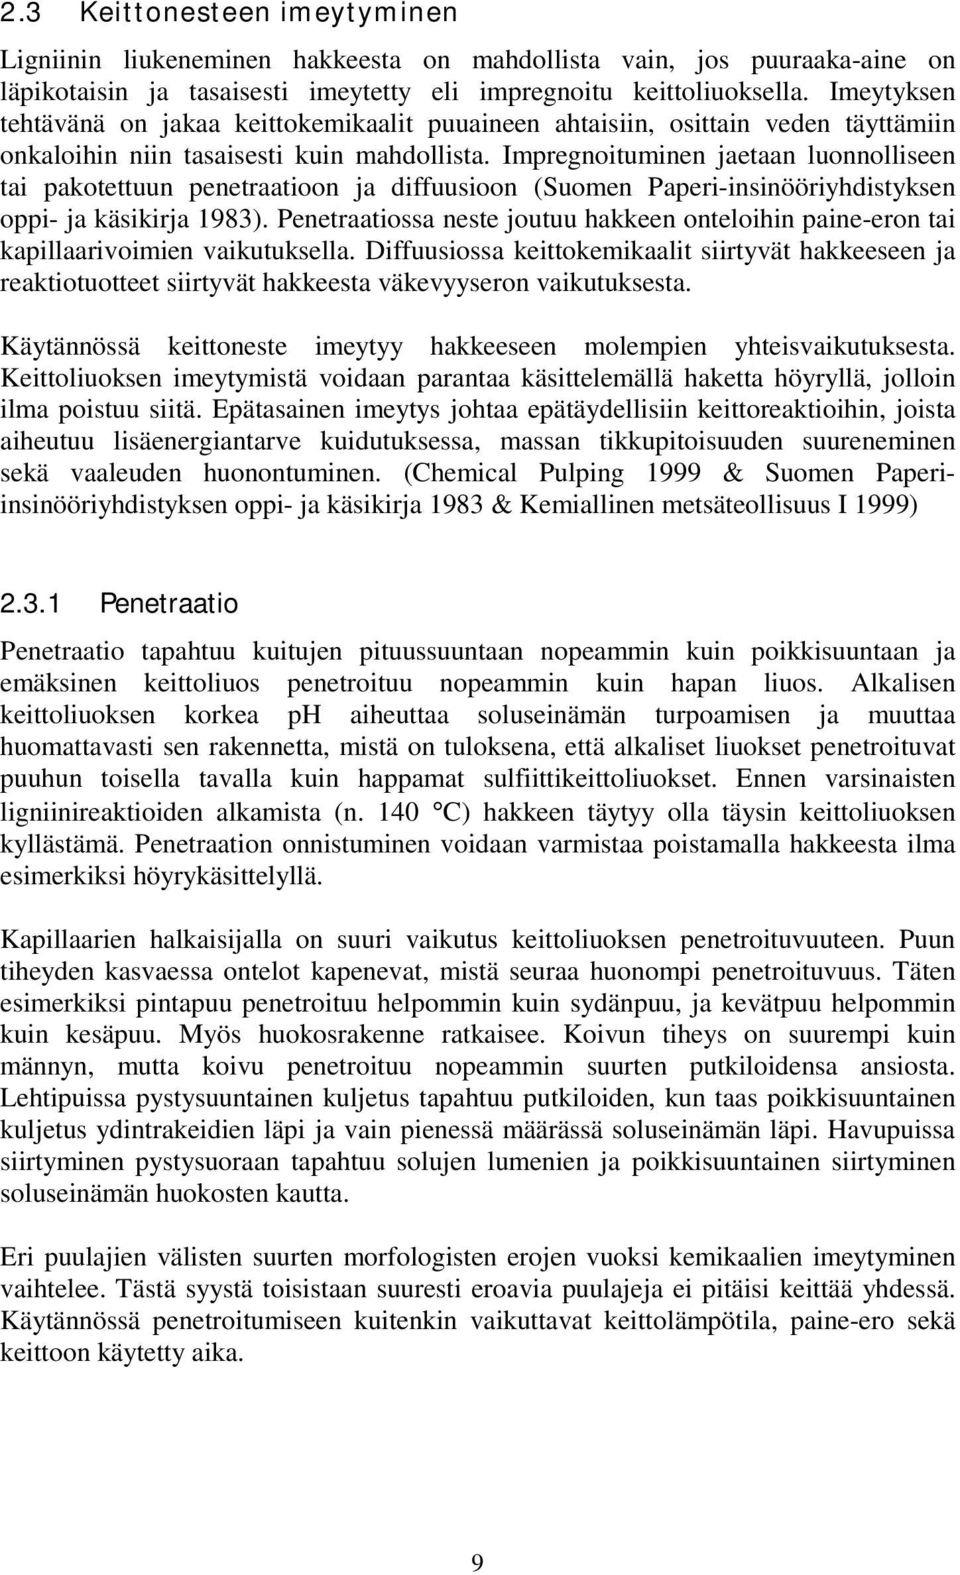 Impregnoituminen jaetaan luonnolliseen tai pakotettuun penetraatioon ja diffuusioon (Suomen Paperi-insinööriyhdistyksen oppi- ja käsikirja 1983).